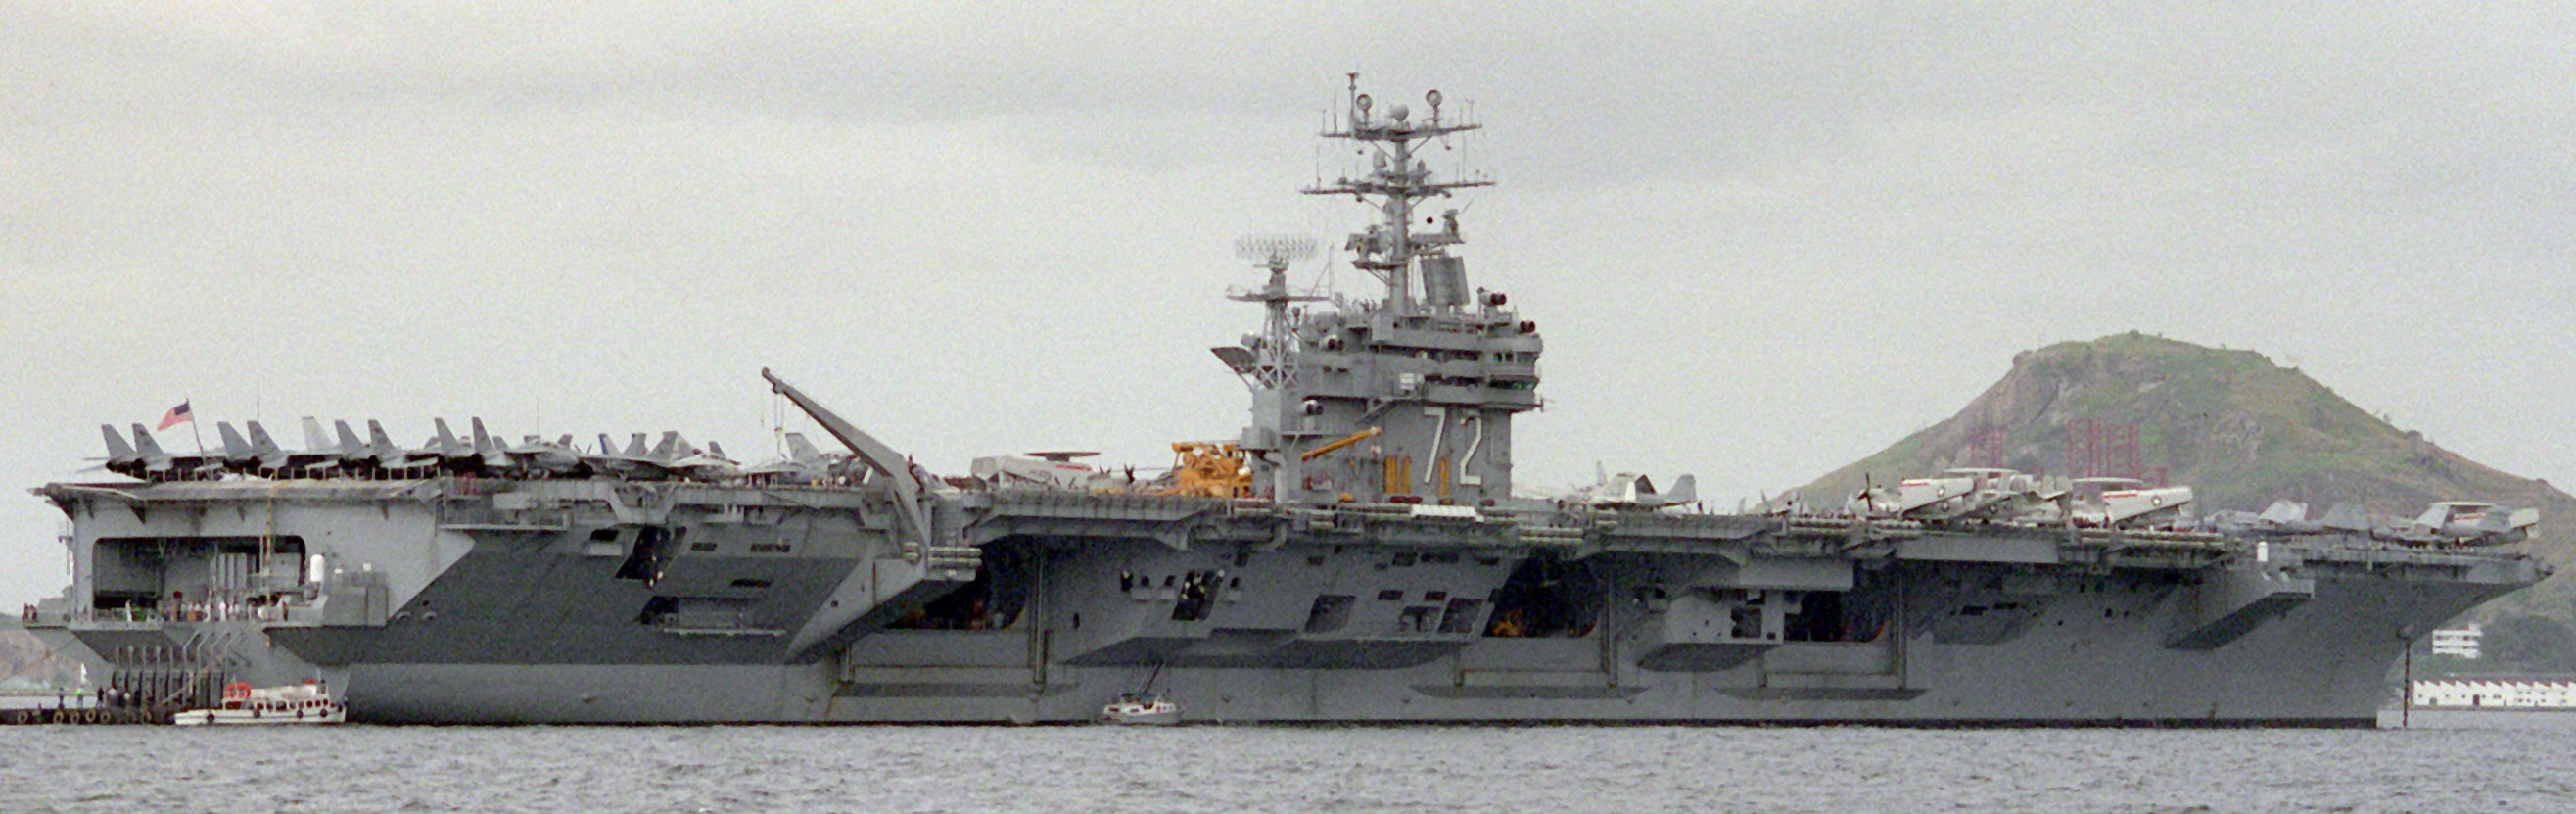 cvn-72 uss abraham lincoln nimitz class aircraft carrier air wing cvw-11 us navy rio de janeiro 163